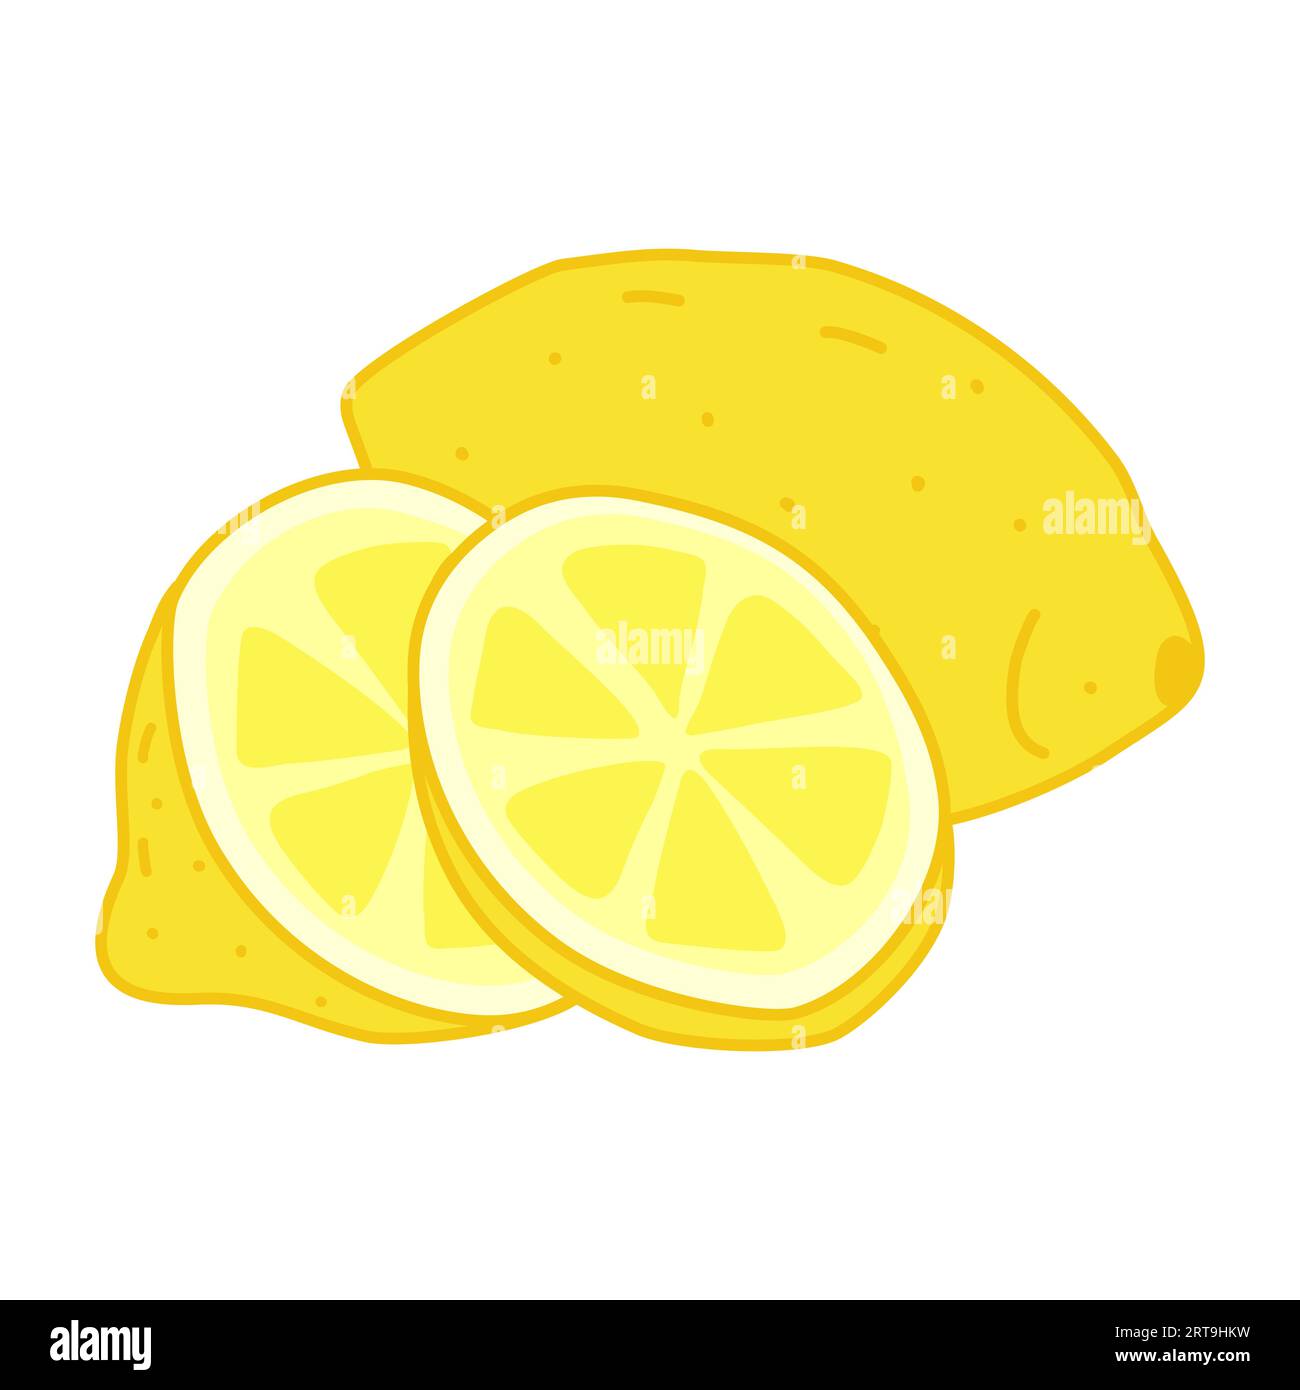 Zitrone mit Scheiben, Doodle-Stil flache Vektor-Illustration Stock Vektor